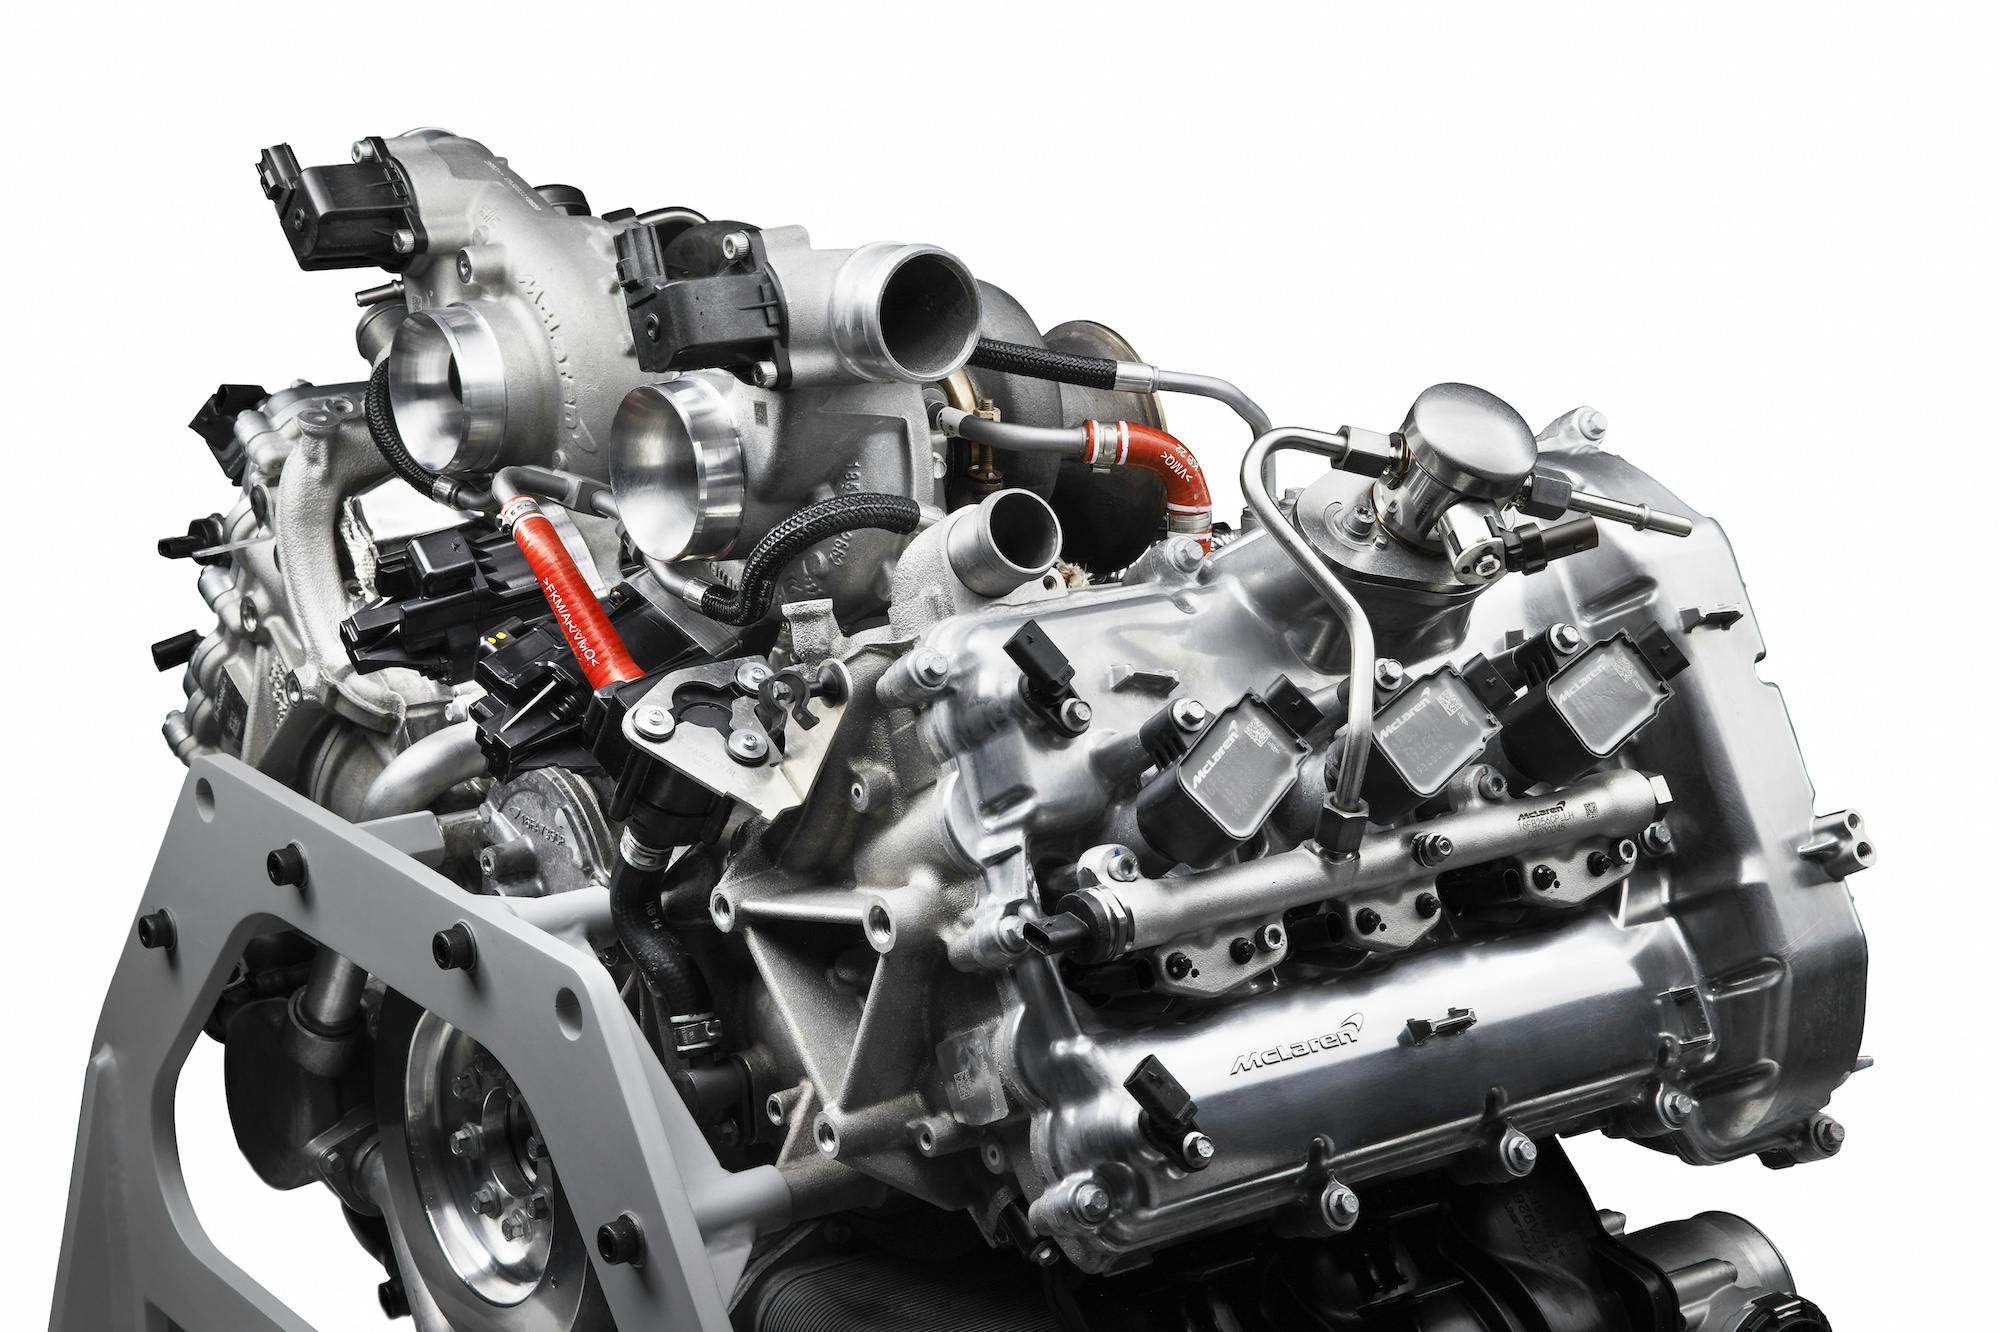 McLaren Artura engine top